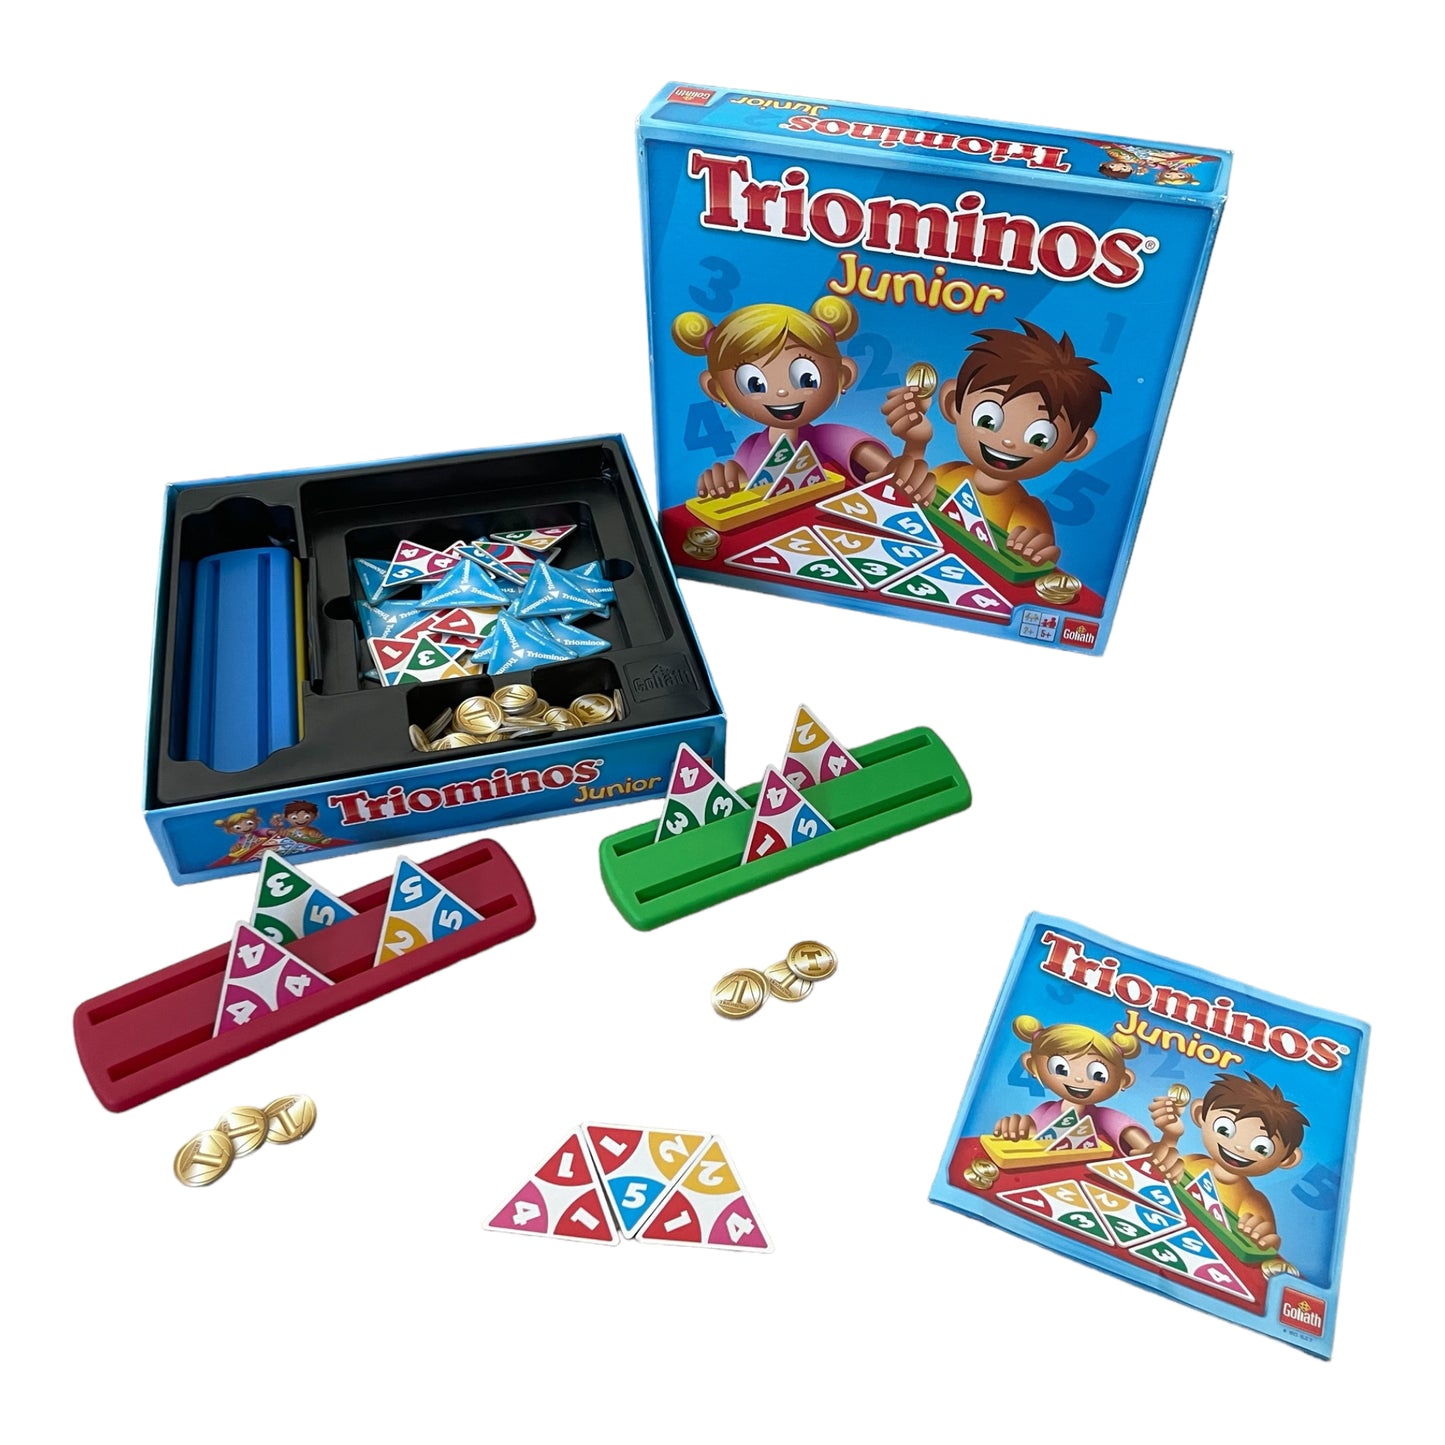 Triominos  The Original Junior